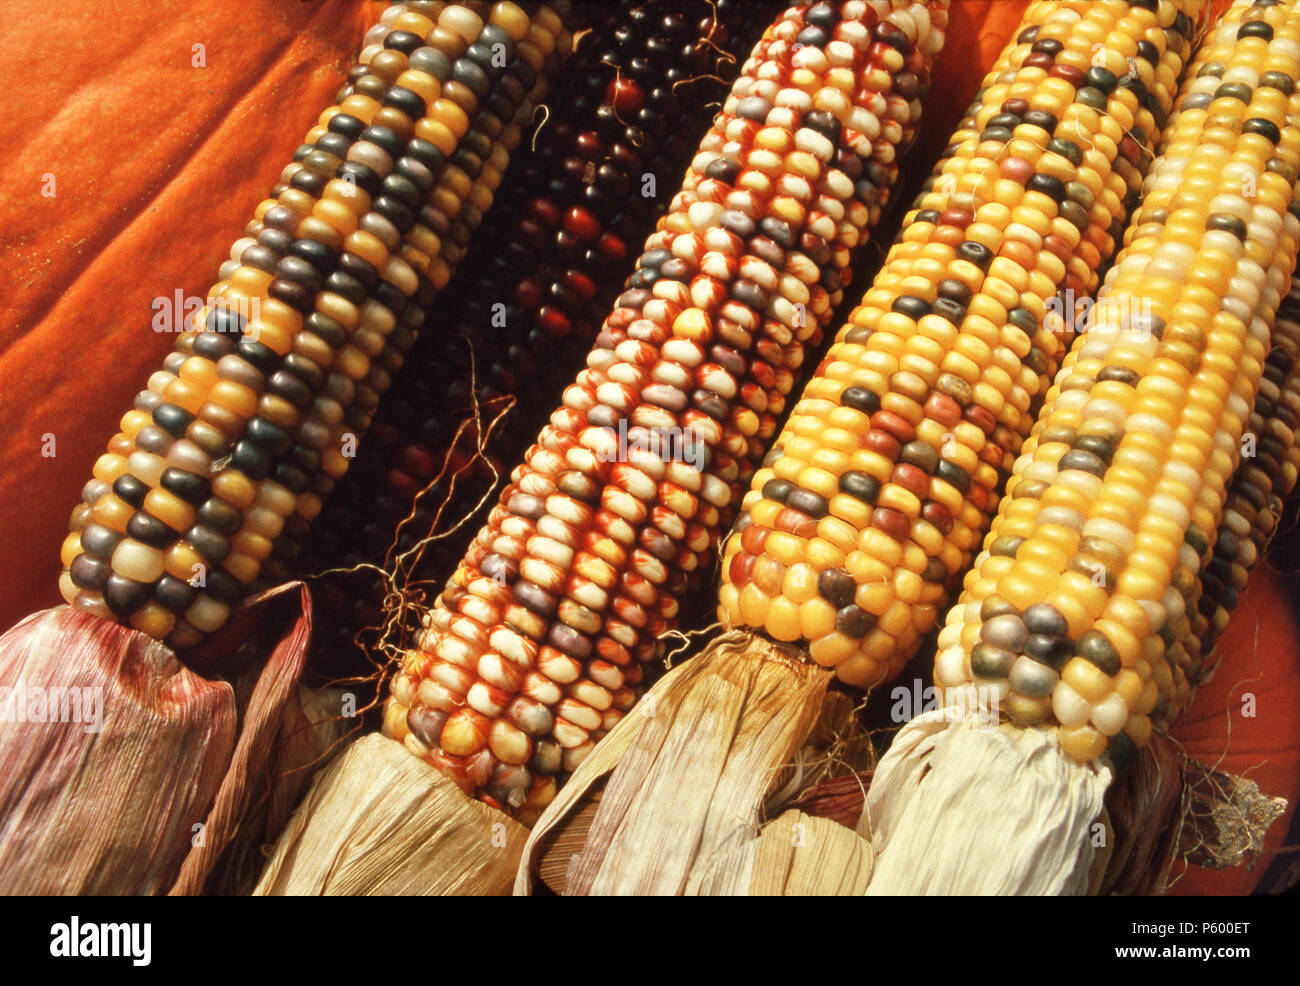 Mais, oder indischen Mais. Foto Stockfoto